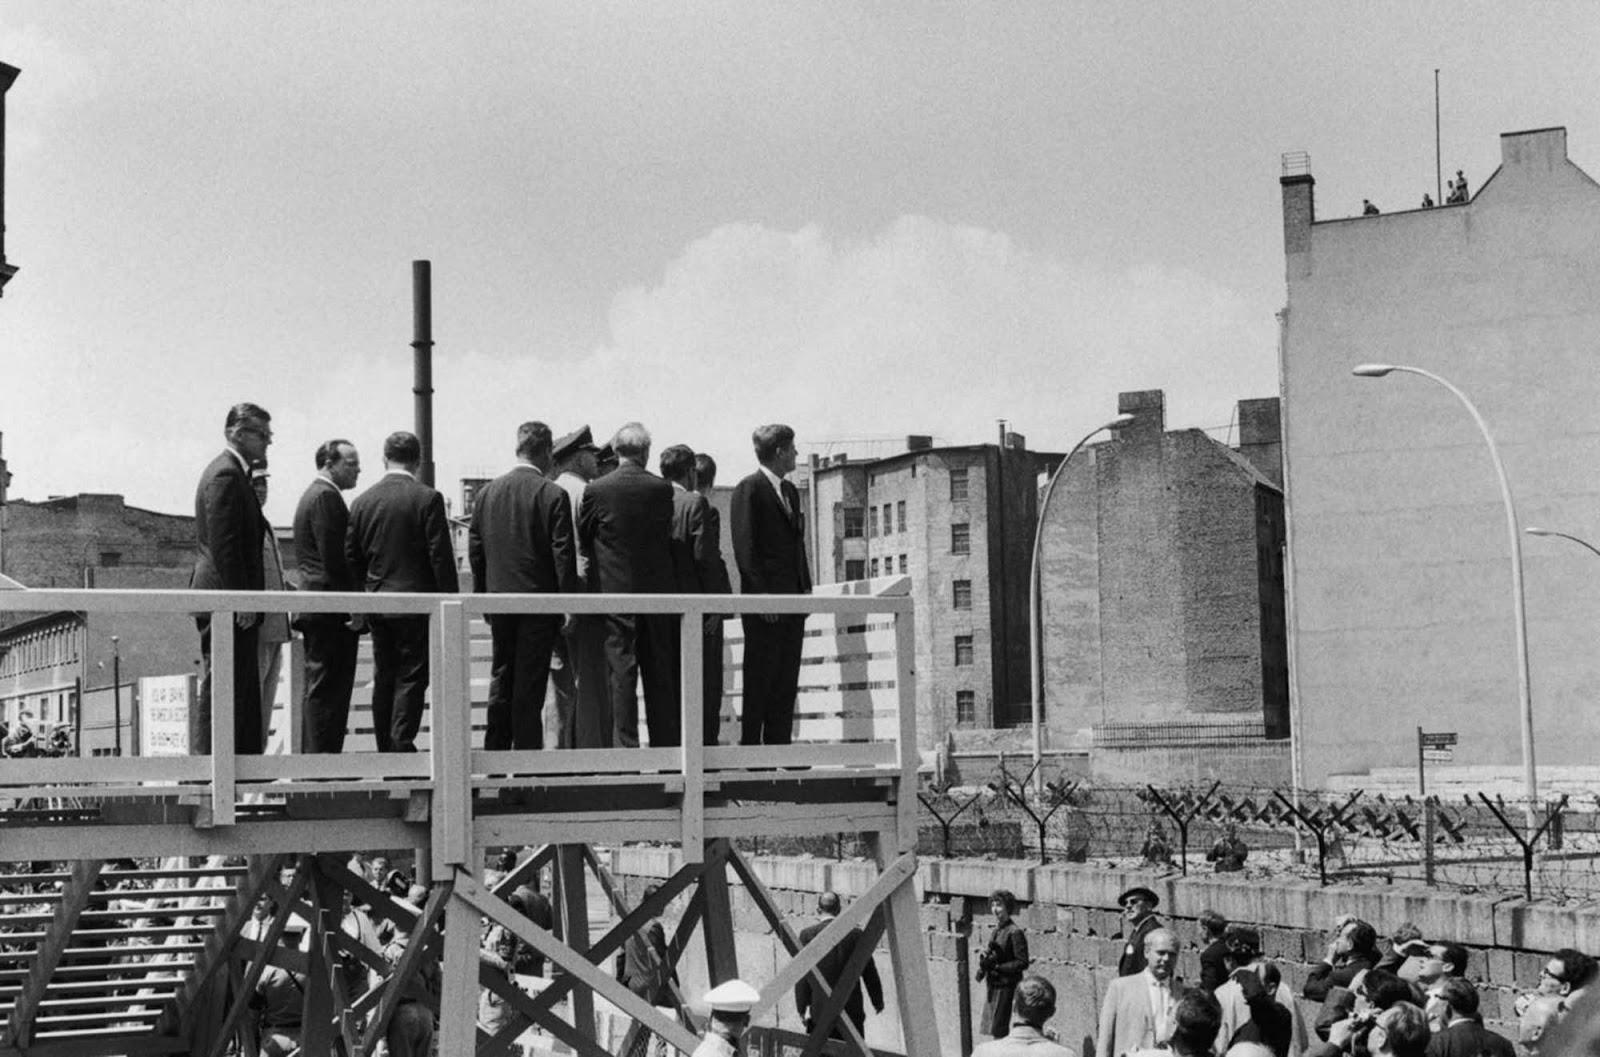 Kennedy de livrer sa “Ich bin ein Berliner” de la parole, 1963